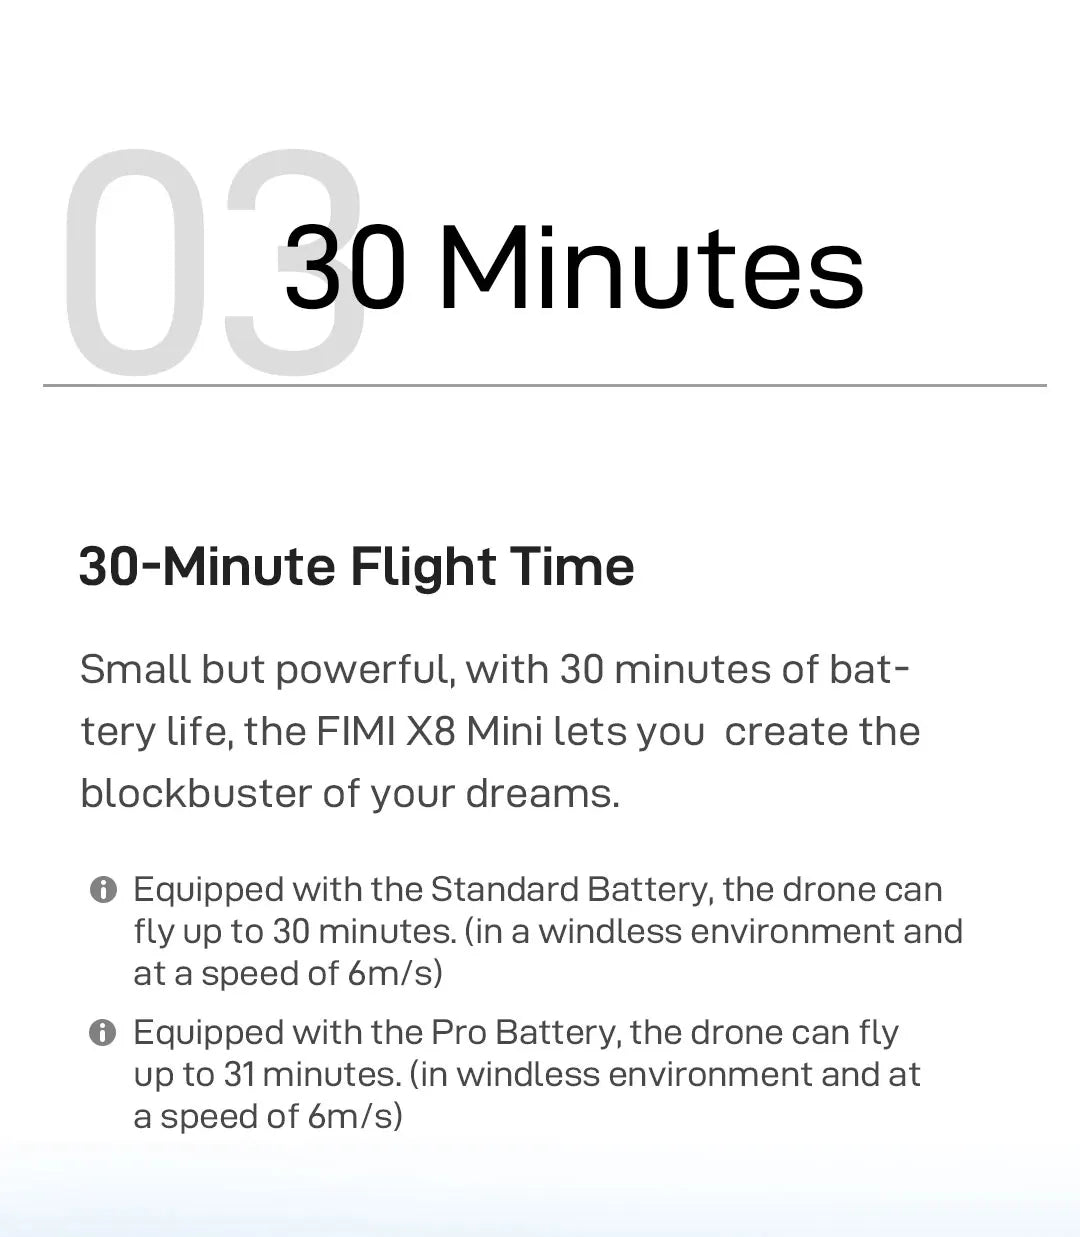 FIMI x8 Mini Pro Camera Drone, the FIMI X8 Mini lets YoU create the blockbuster of your dreams